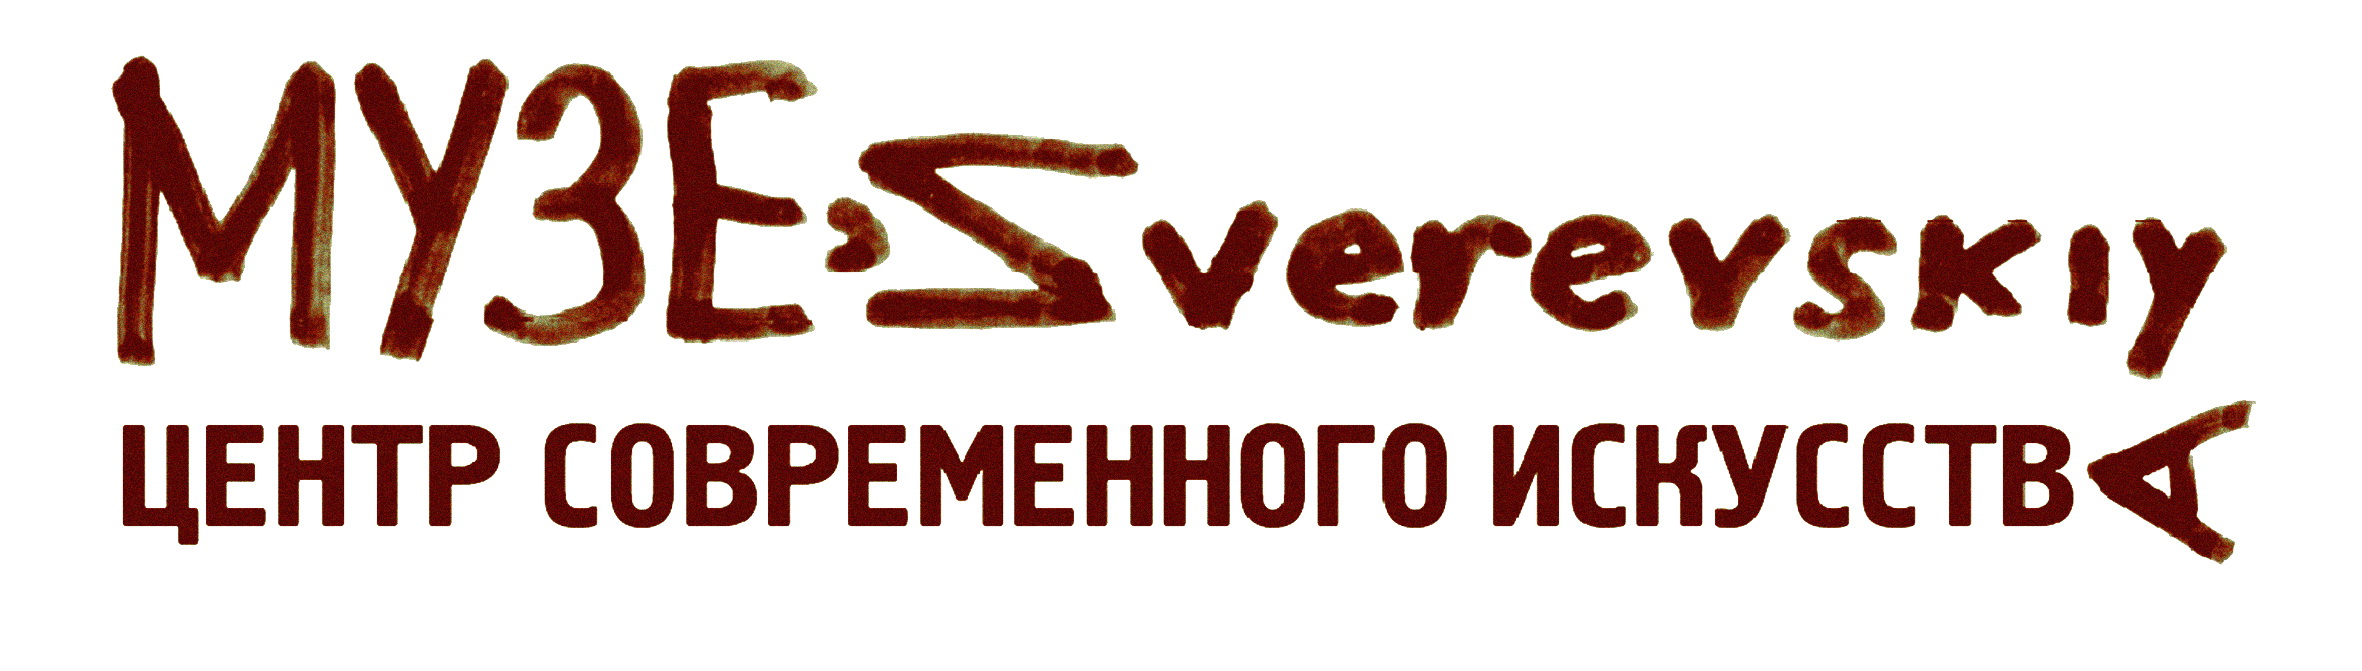 Zverevskiy Logo